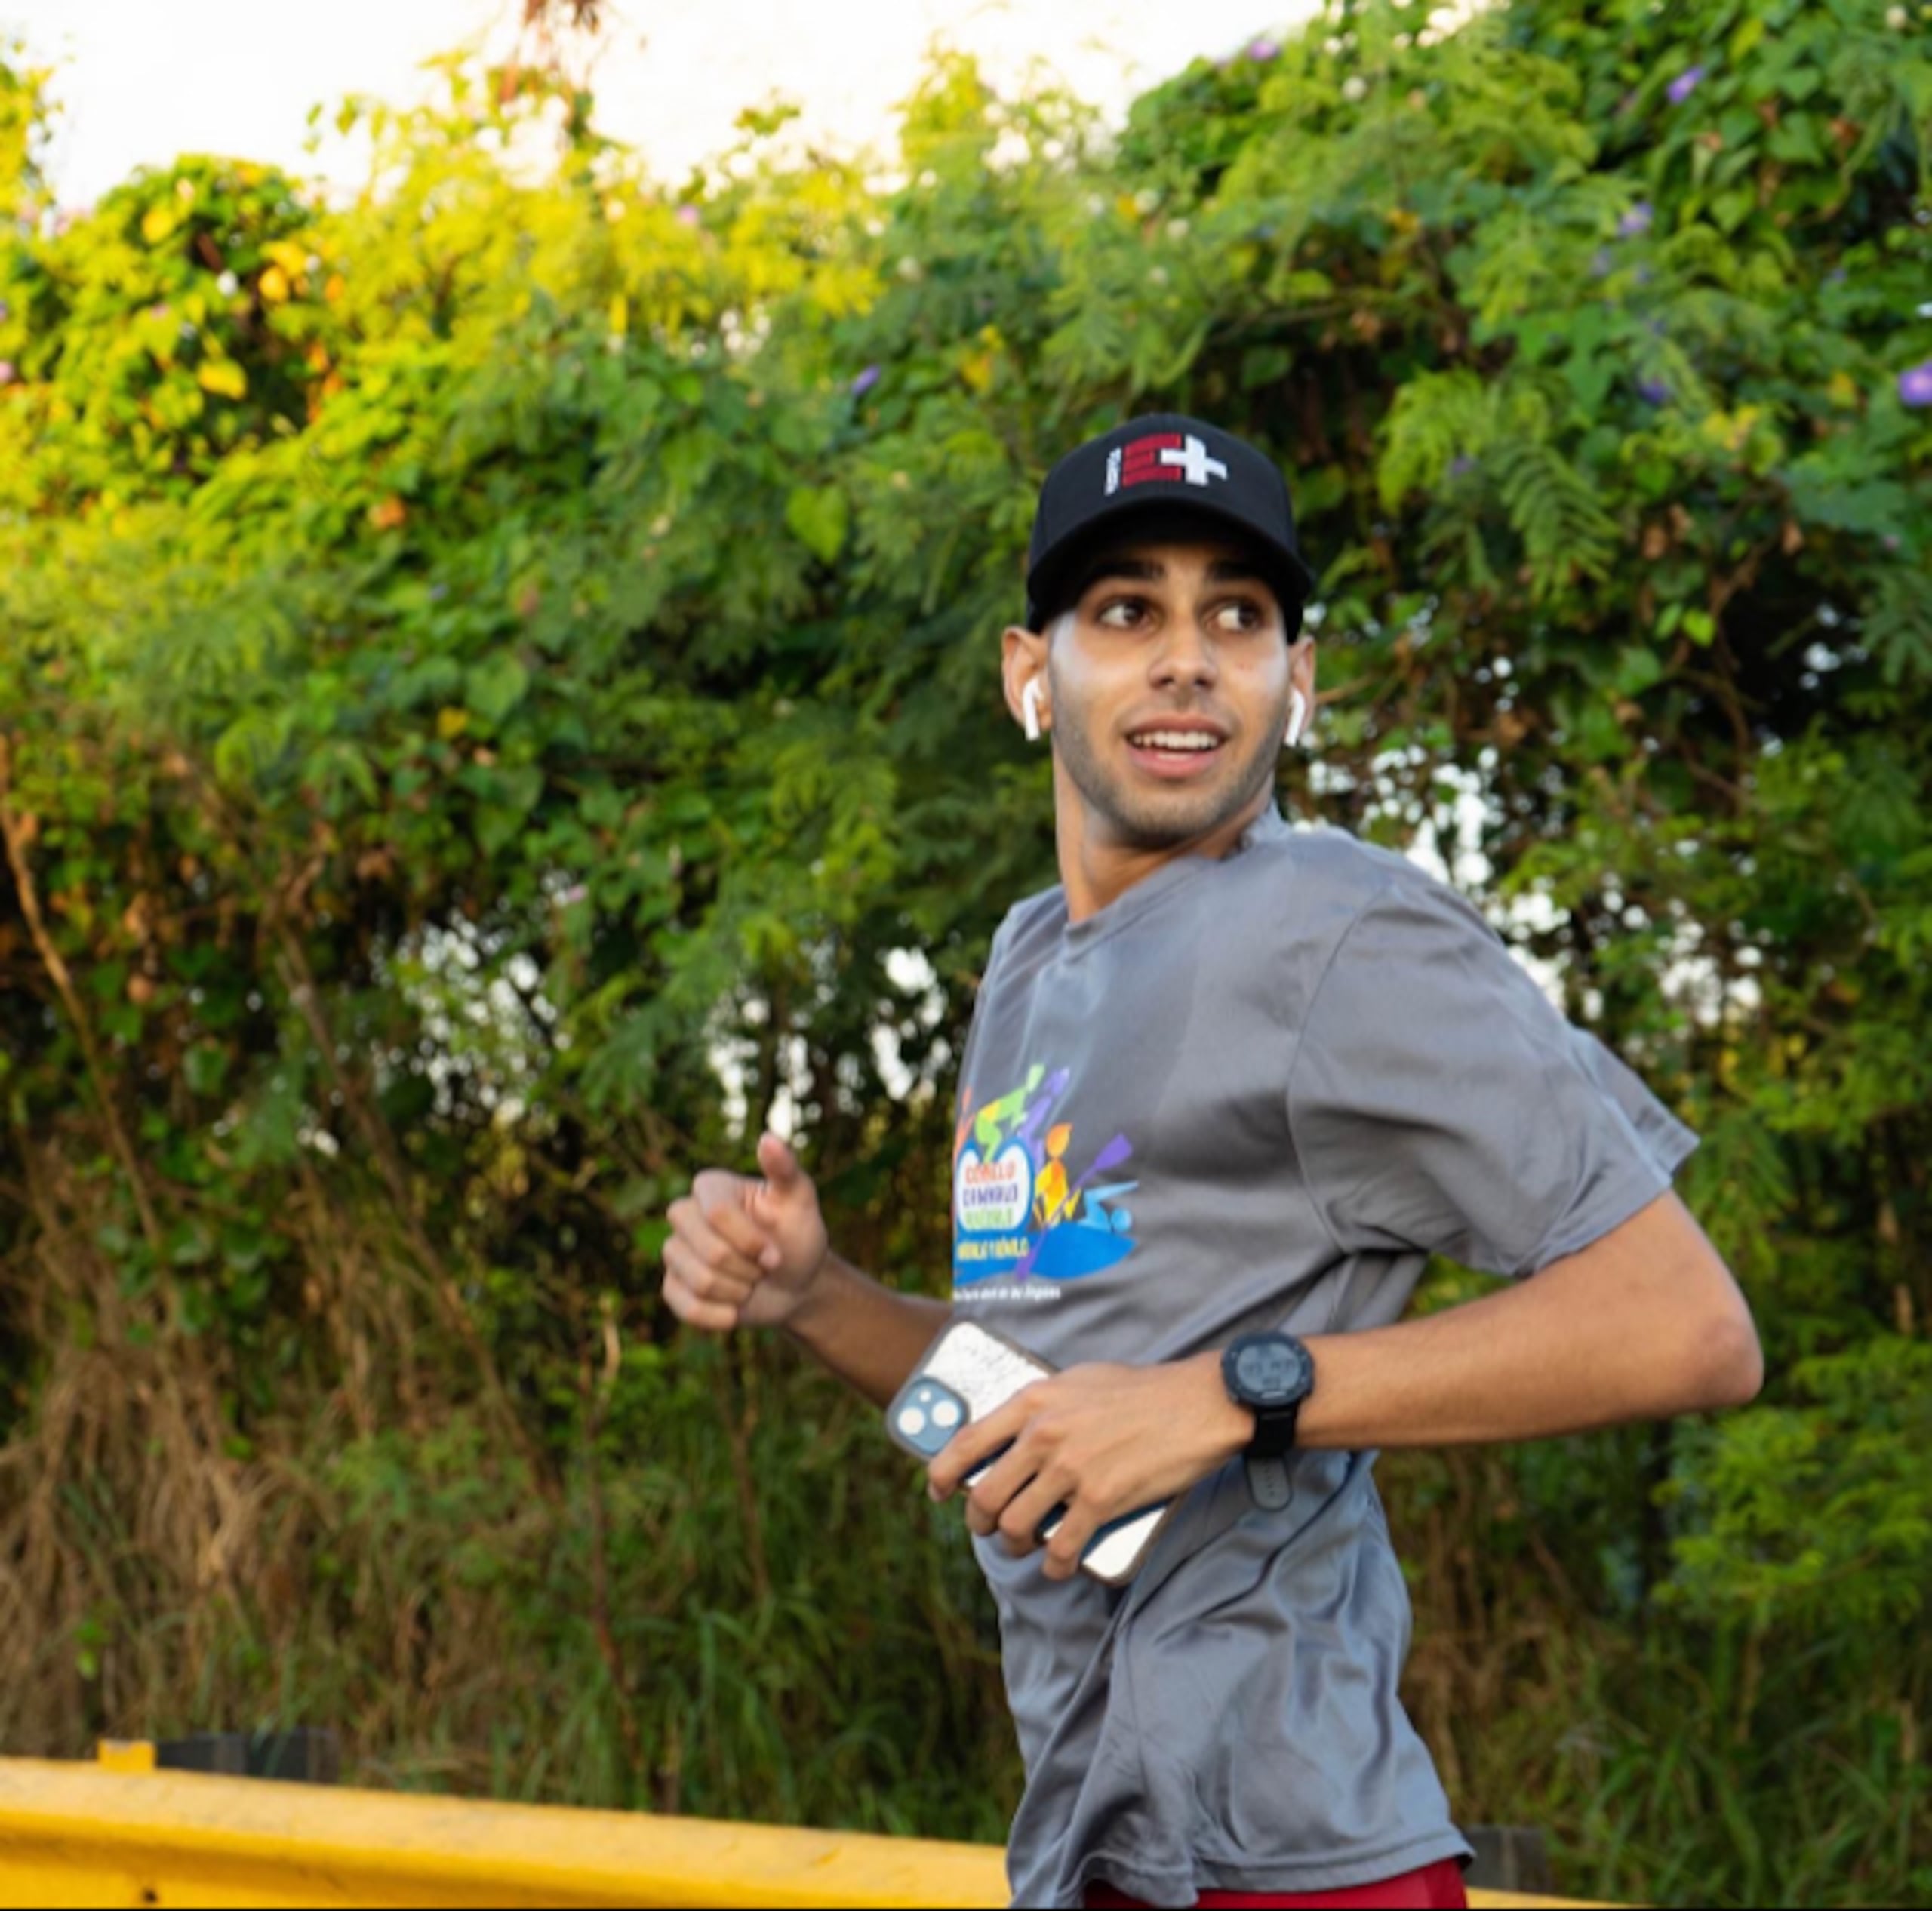 Diego Otero retoma su gesta de darle la vuelta a Puerto Rico corriendo para recaudar fondos y crear conciencia sobre las necesidades de sus semejantes.